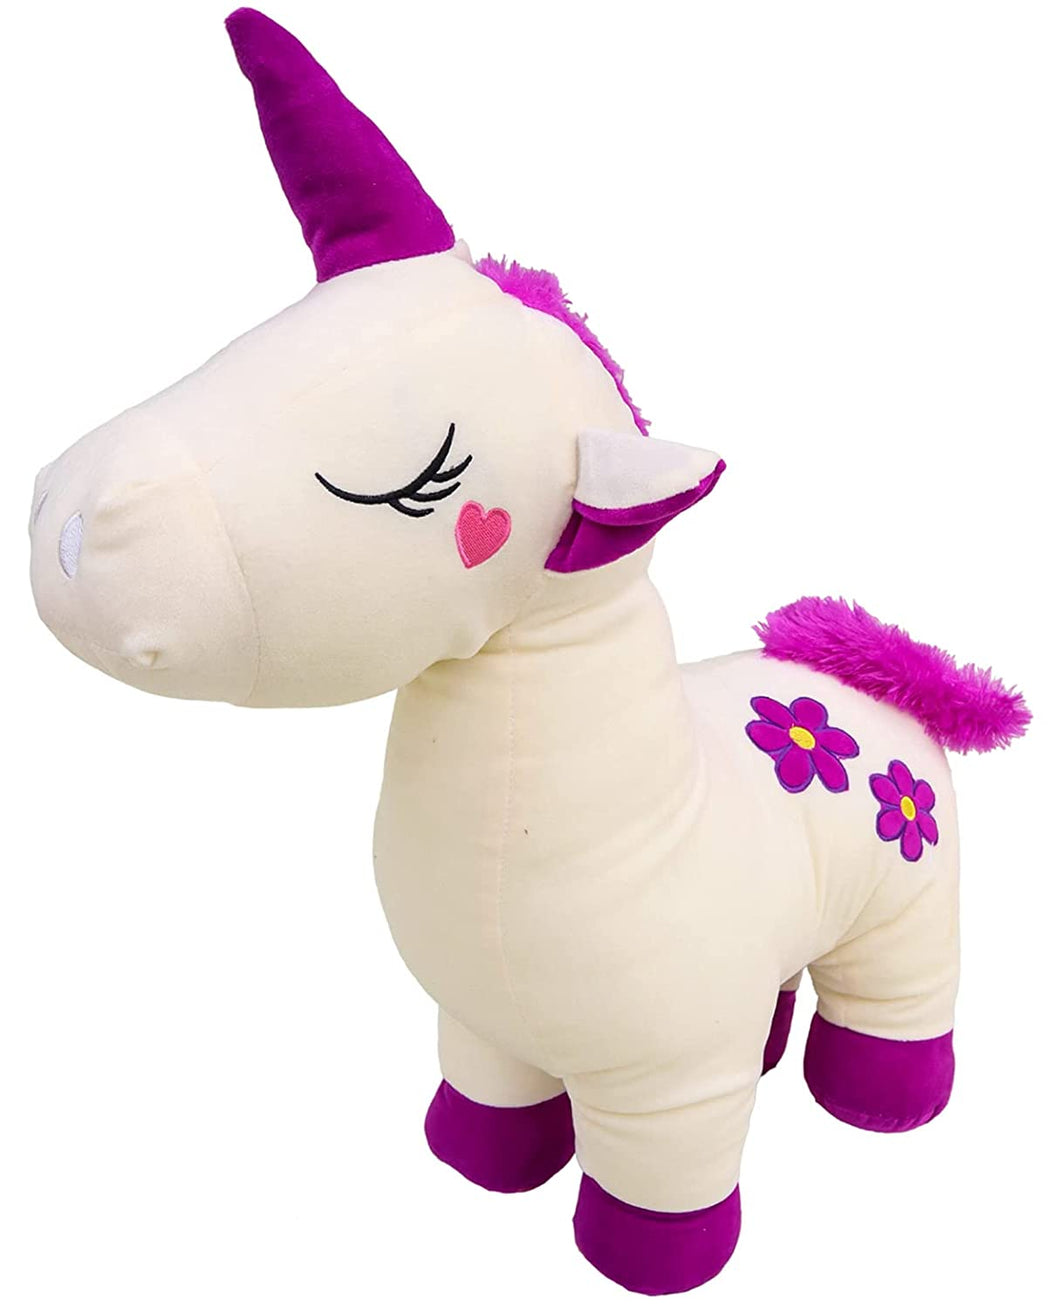 Toyshine Big Unicorn Stuffed Animal Soft Large Unicorn Plush Pillow Toy Gift for Girls Boys (White, 63 cm)